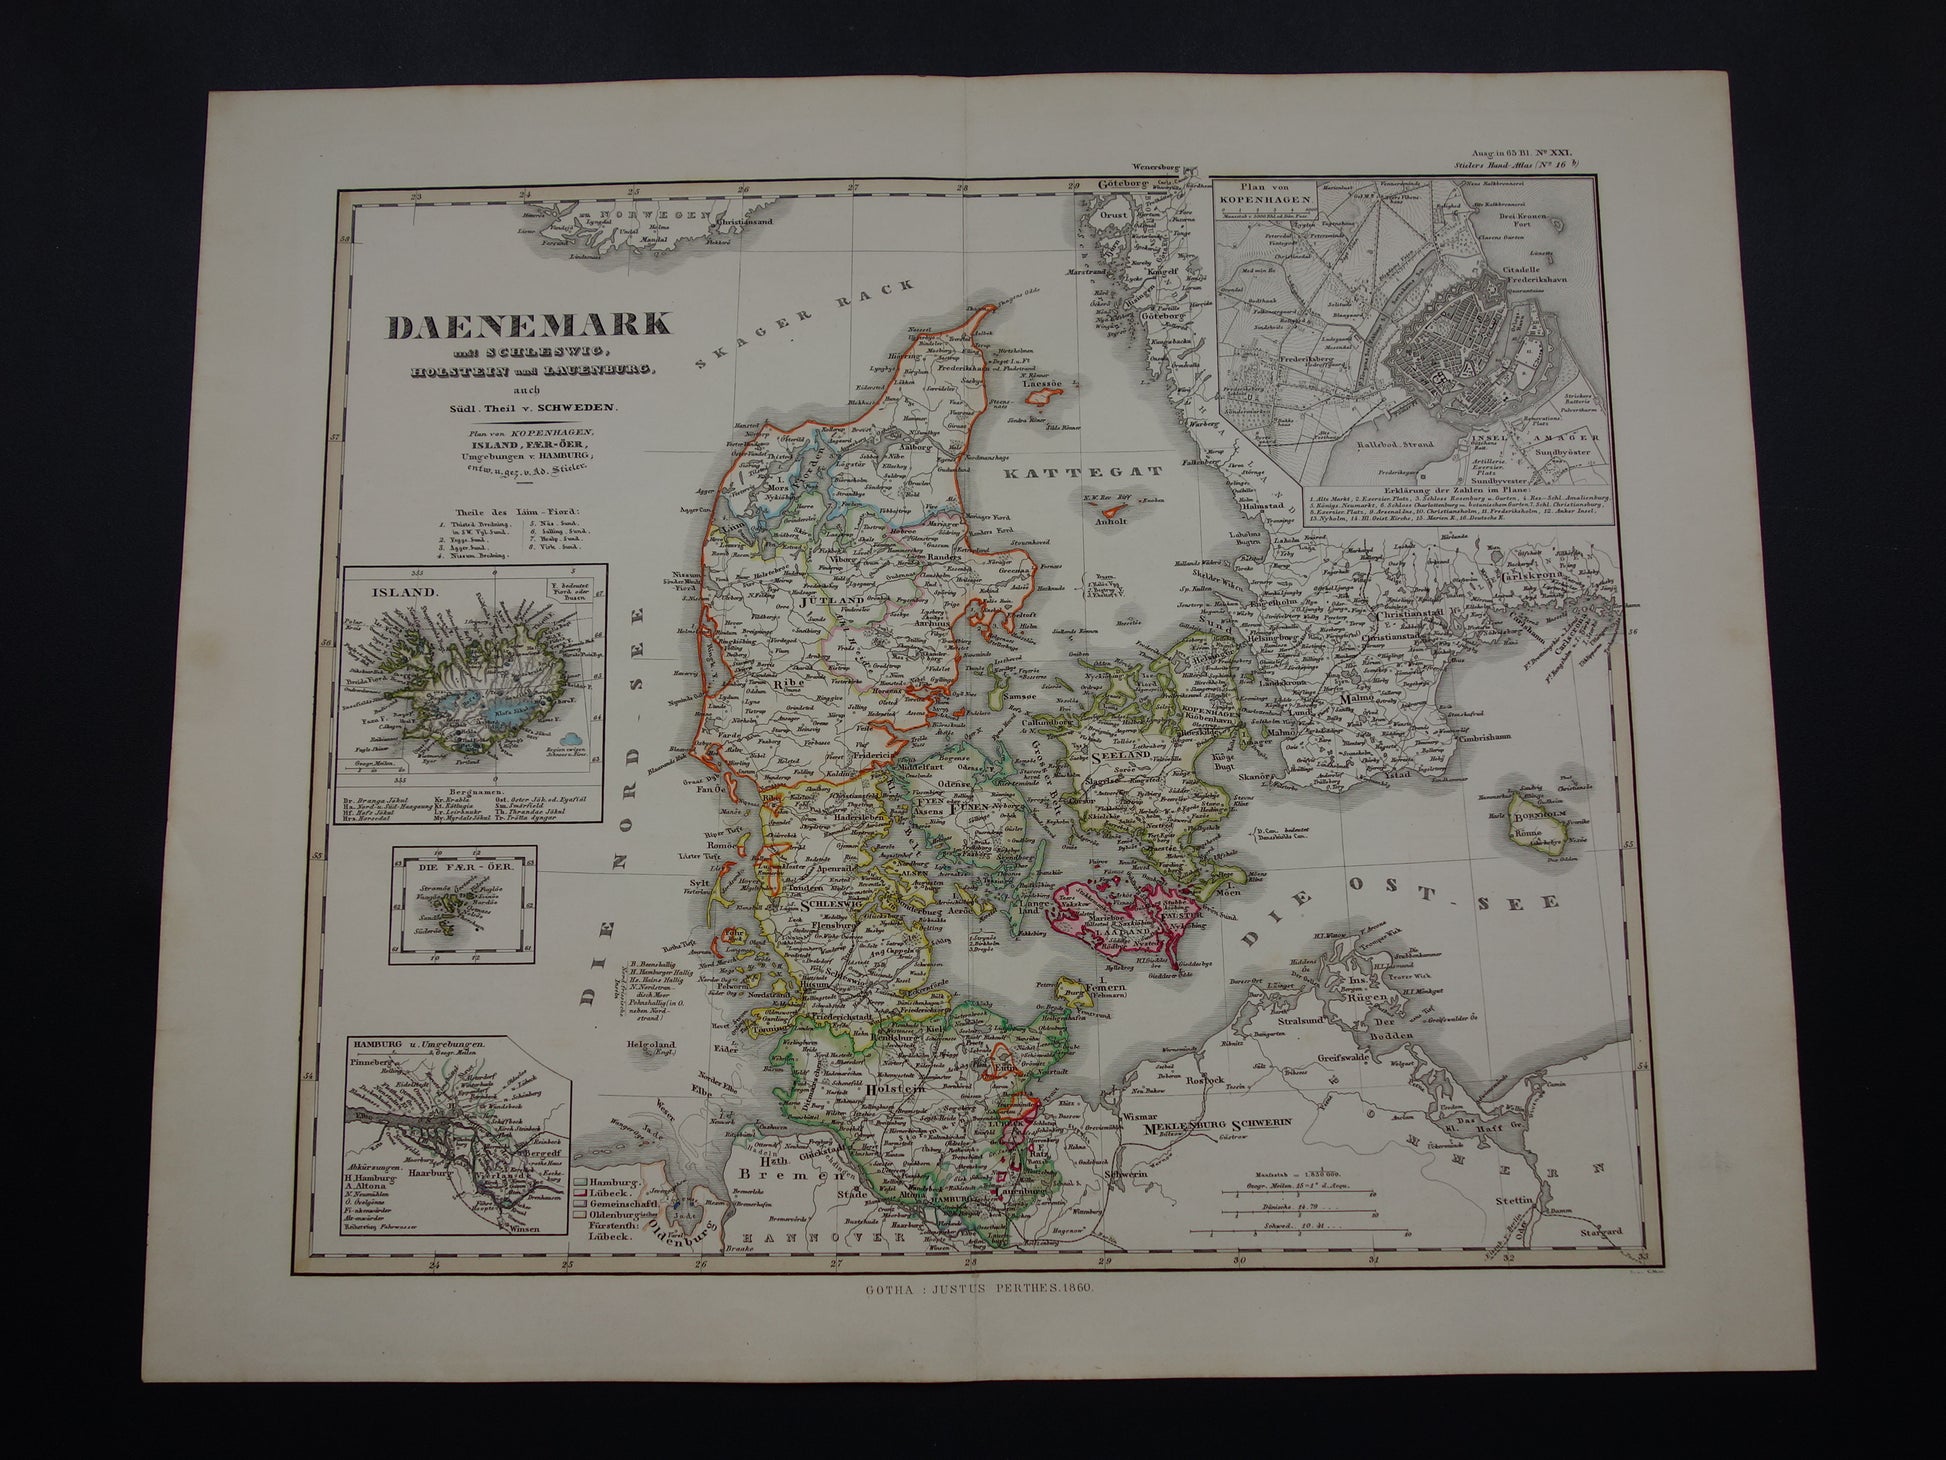 DENEMARKEN oude kaart van Denemarken uit 1860 originele antieke landkaart Kopenhagen vintage met jaartal